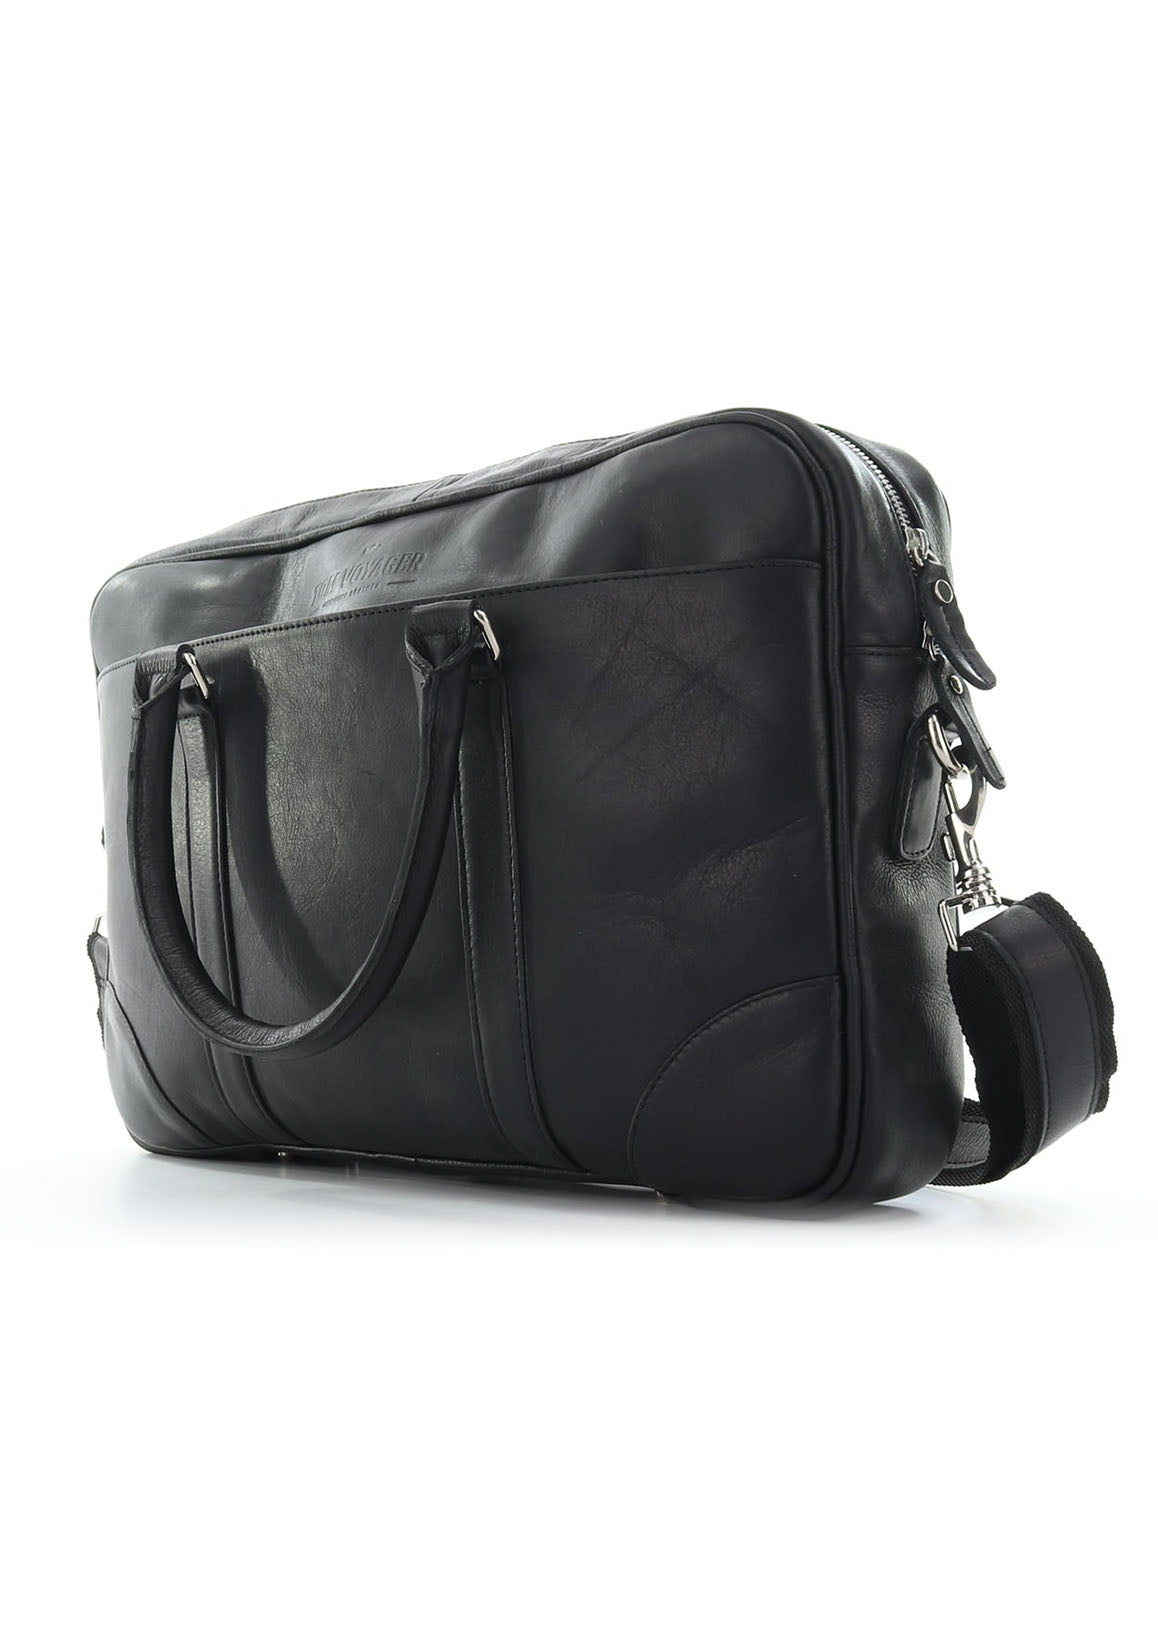 Black Hayden - messenger bag - leather bag - laptop bag - front view1 - Tom Voyager